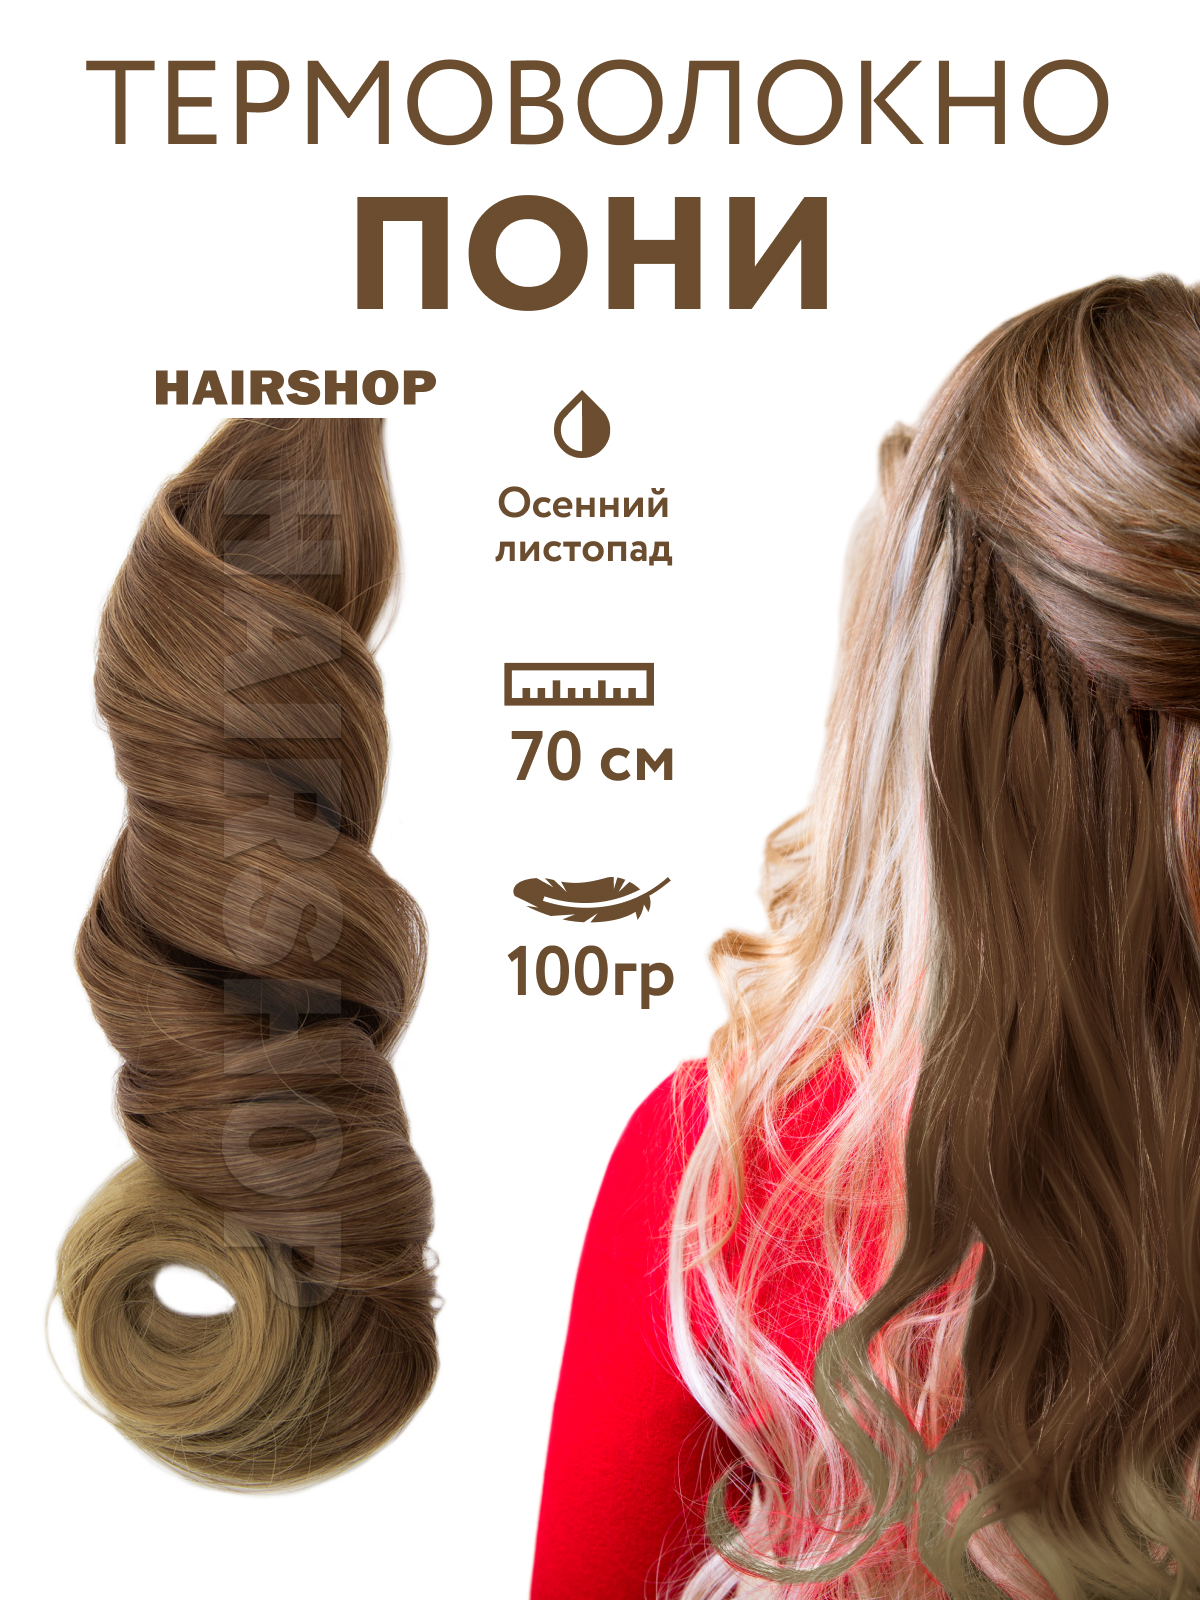 Канекалон HAIRSHOP Пони HairUp для точечного афронаращивания Осенний листопад 1,4м канекалон hairshop пони hairup для точечного афронаращивания осенний листопад 1 4м